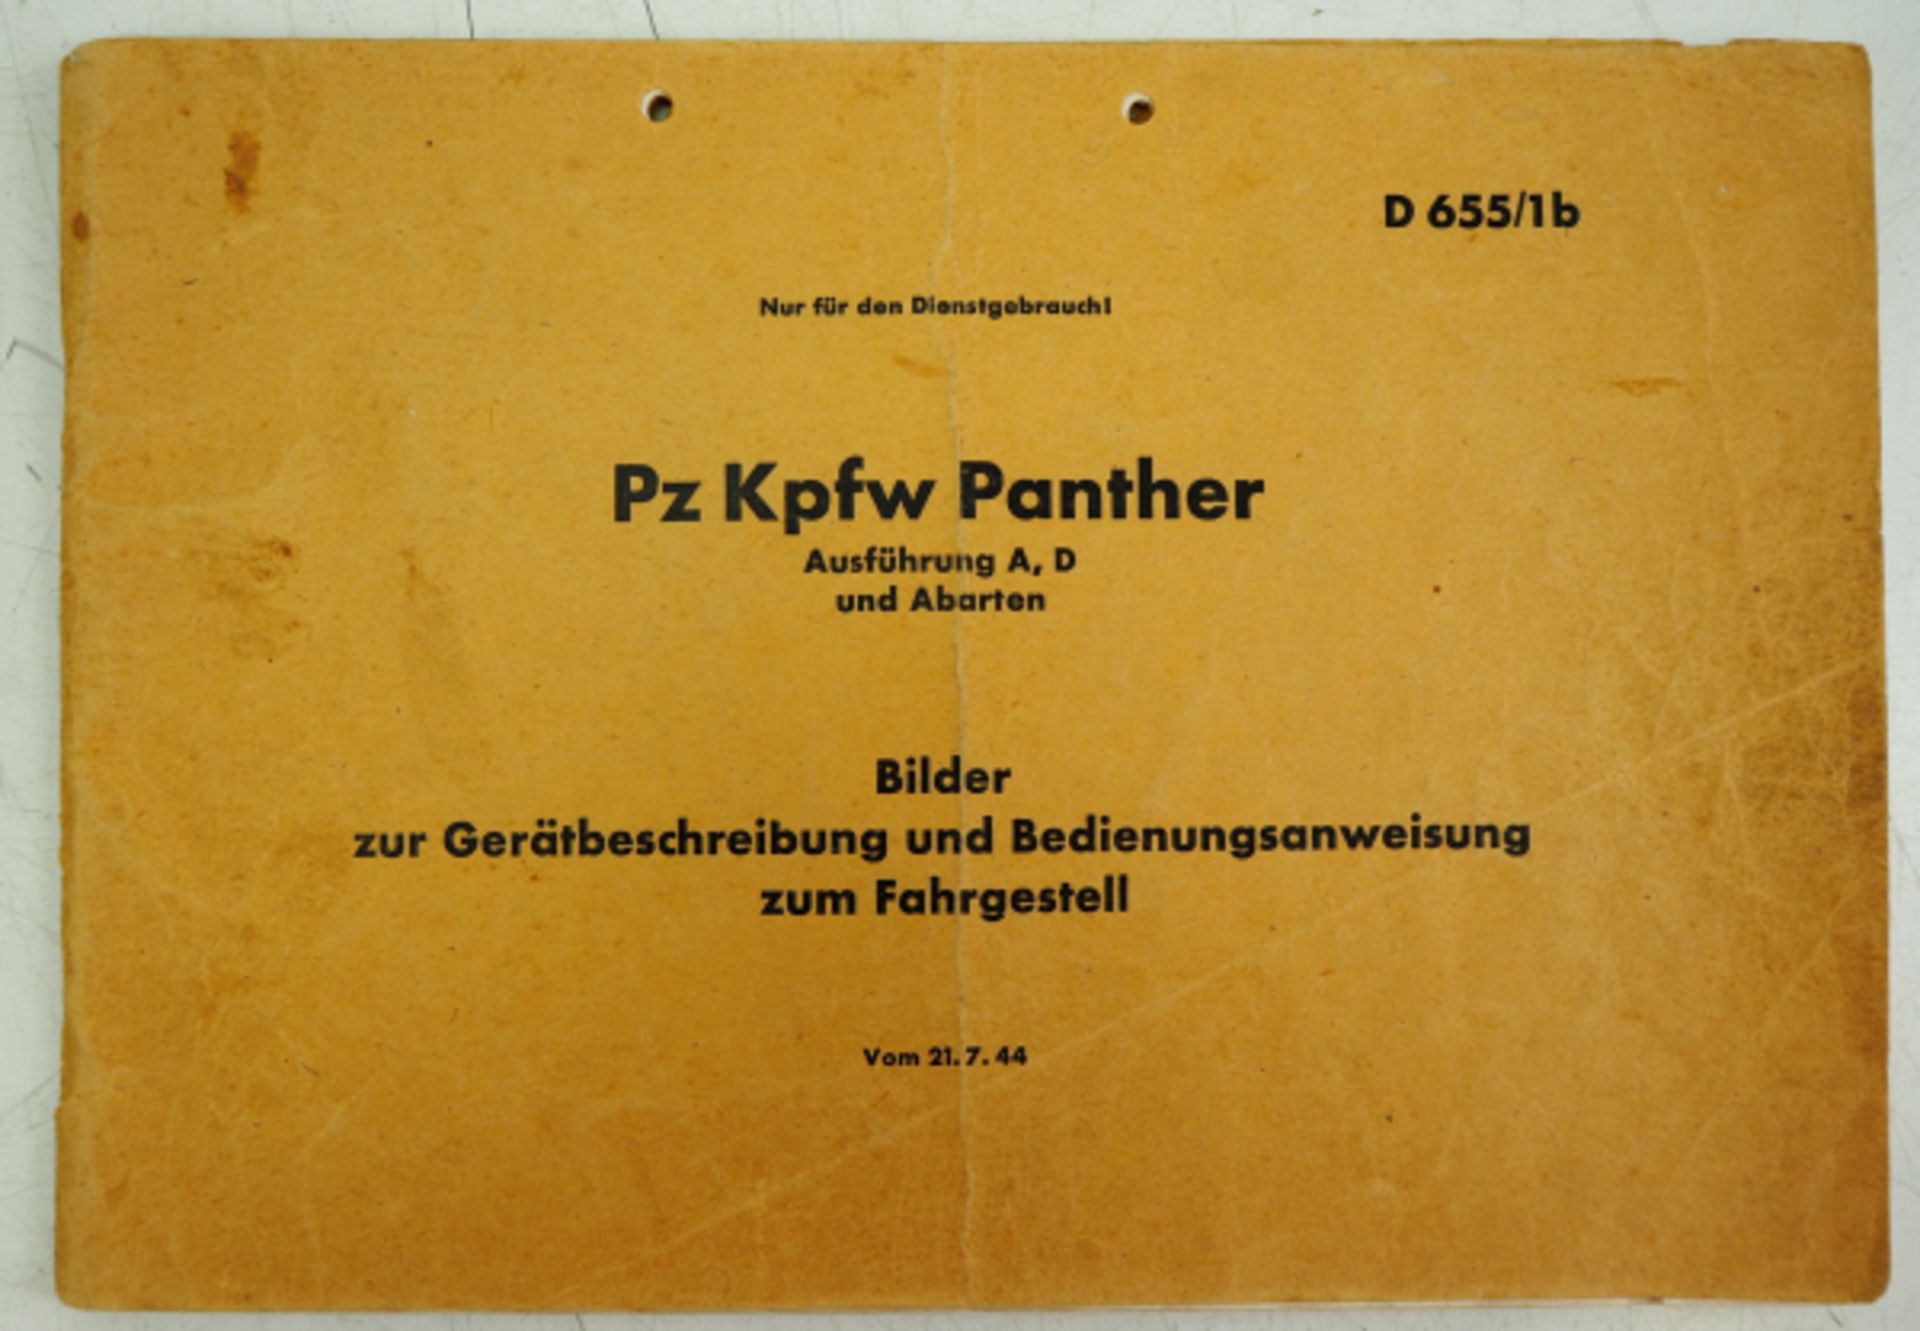 Pz Kpfw Panther Ausführung A, D und Abarten - Bilder zur Gerätbeschreibung und Bedienungsanweisung